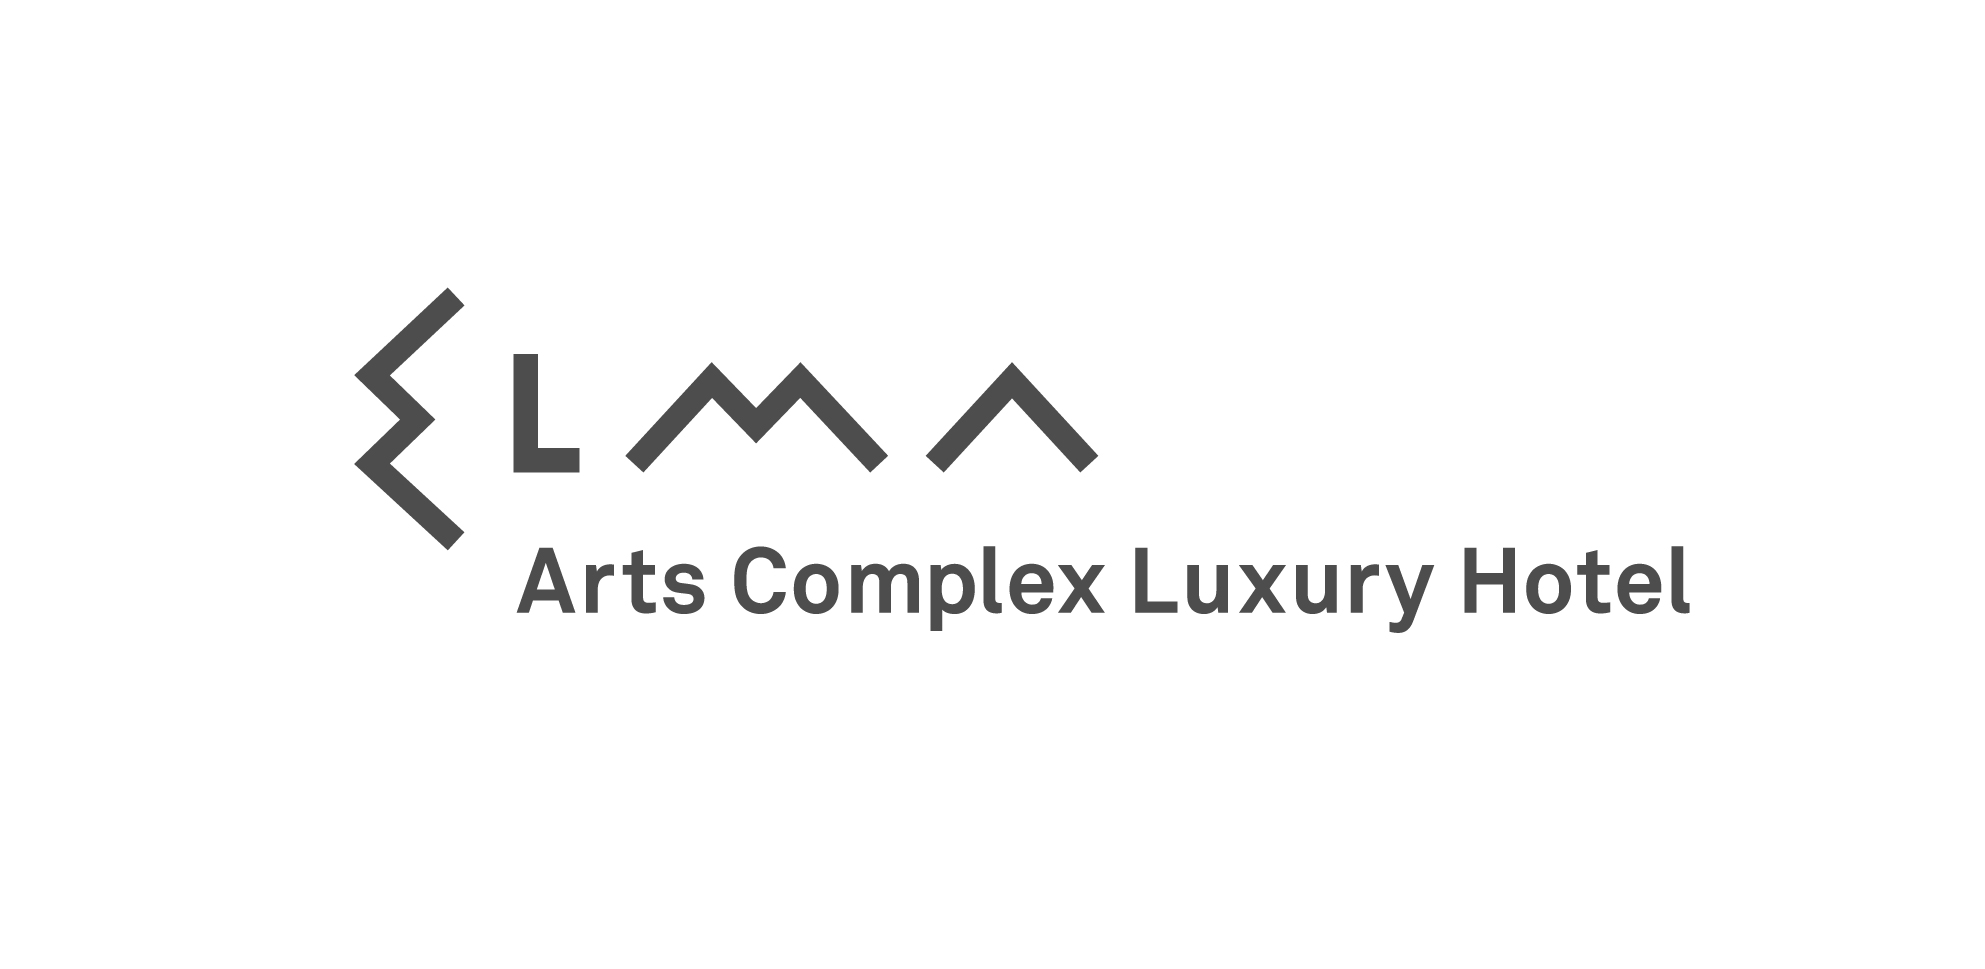 Elma-LogoTag-English-V01